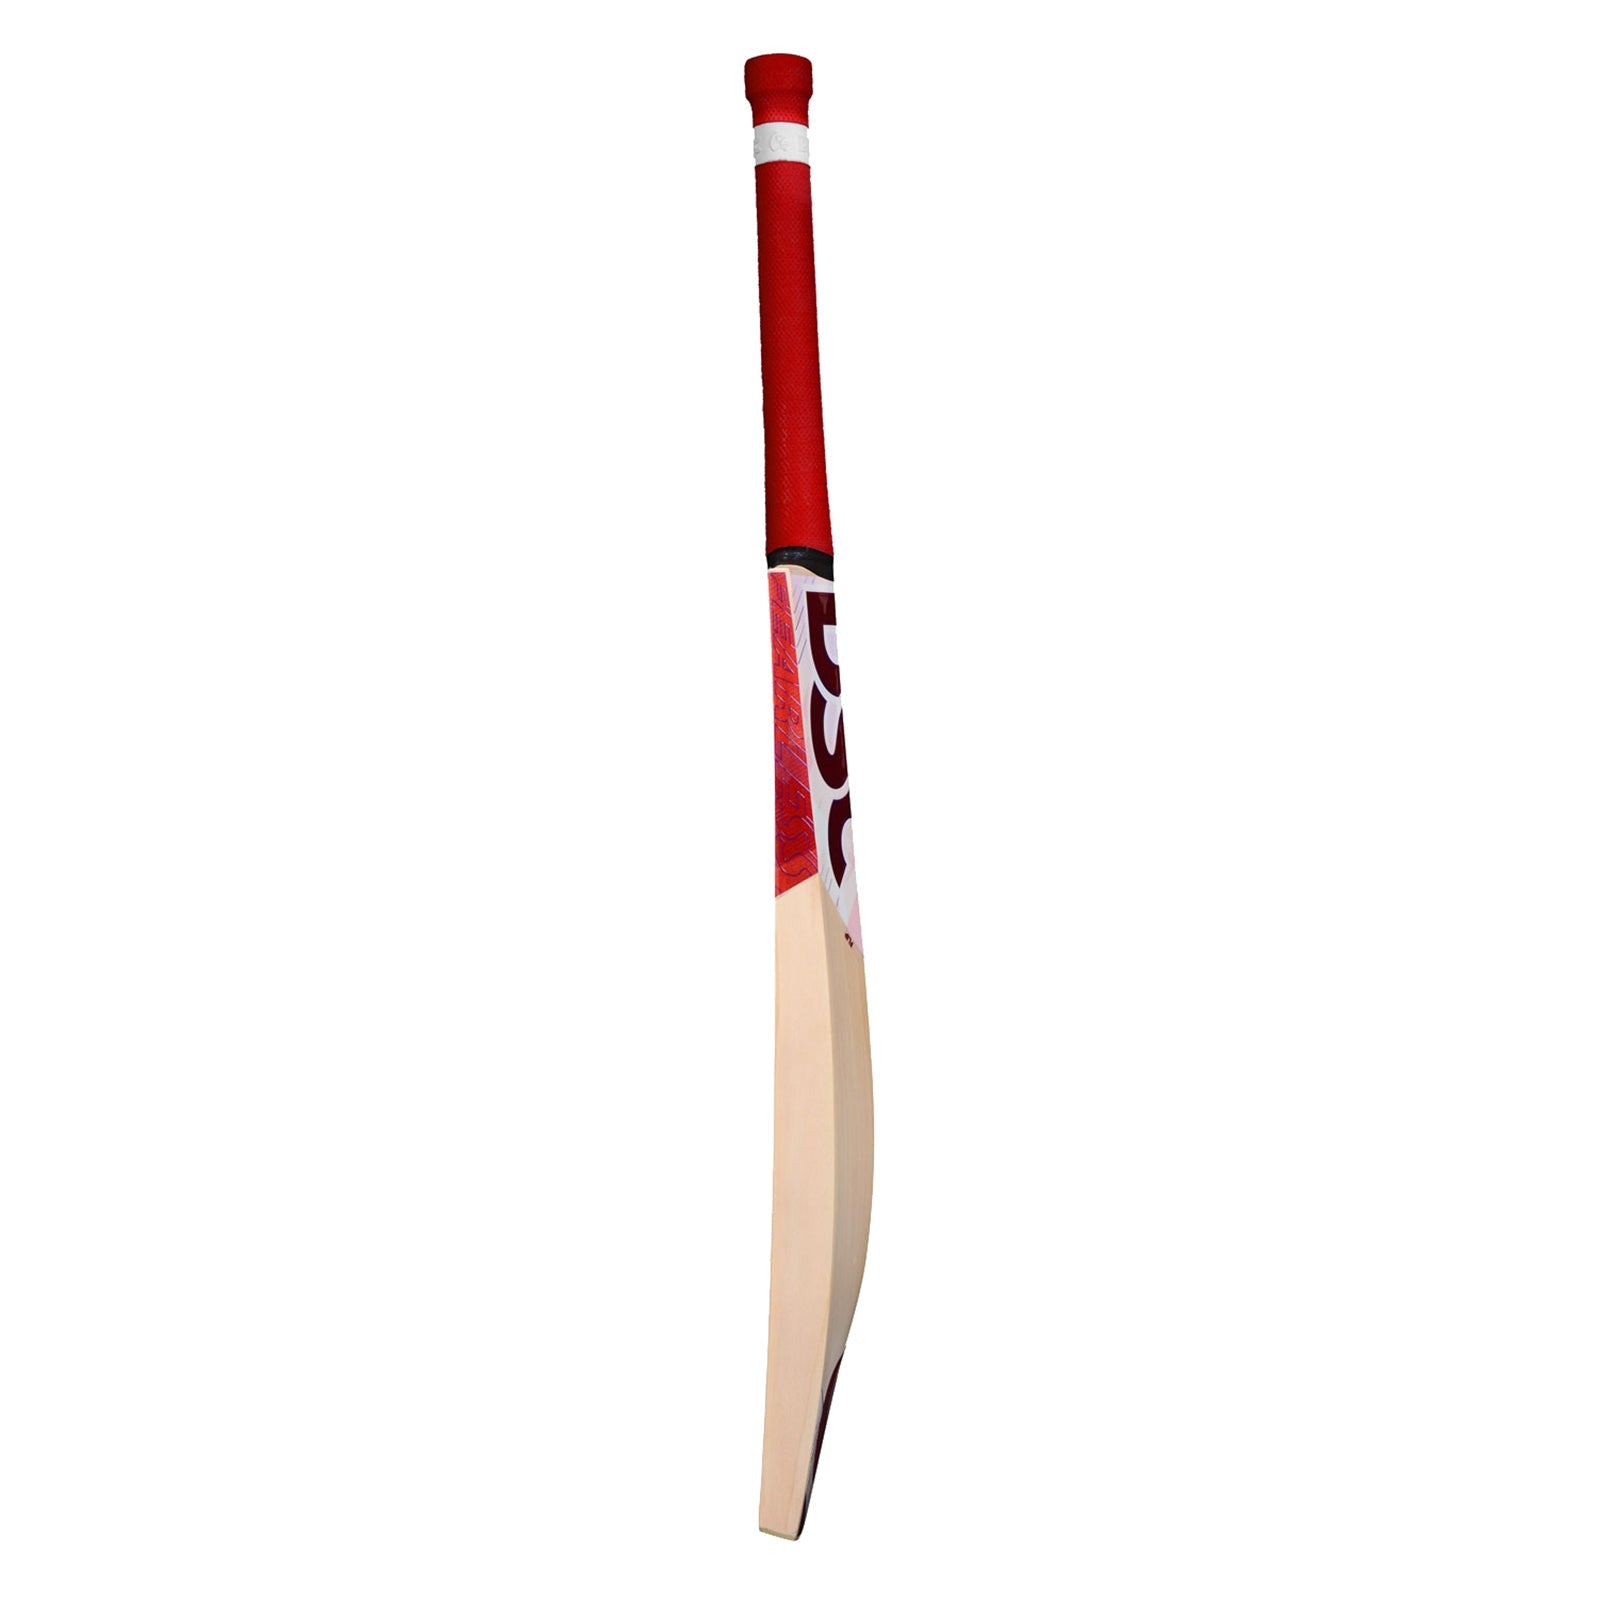 DSC Flip 700 Cricket Bat - Senior Long Blade